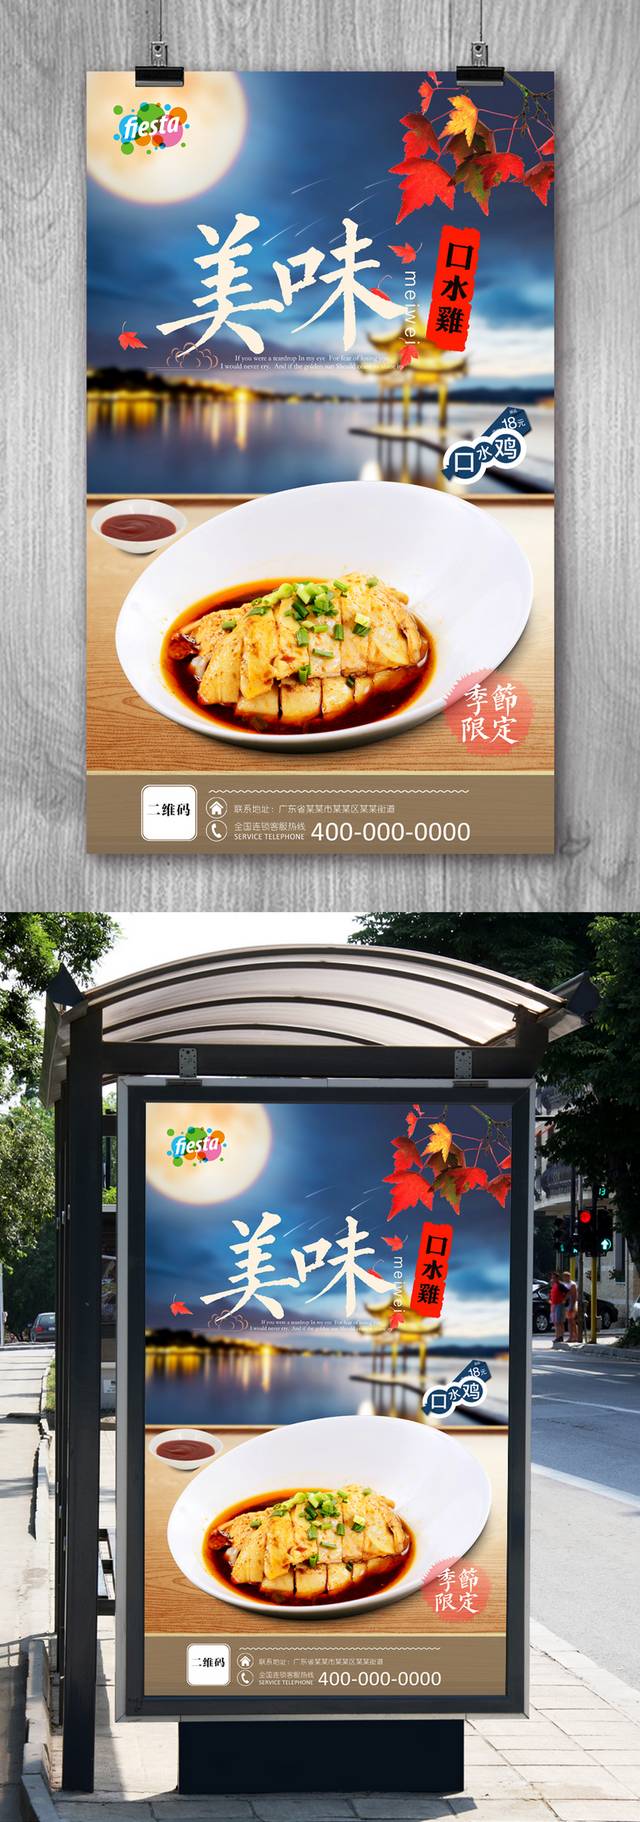 美味口水鸡宣传海报设计psd